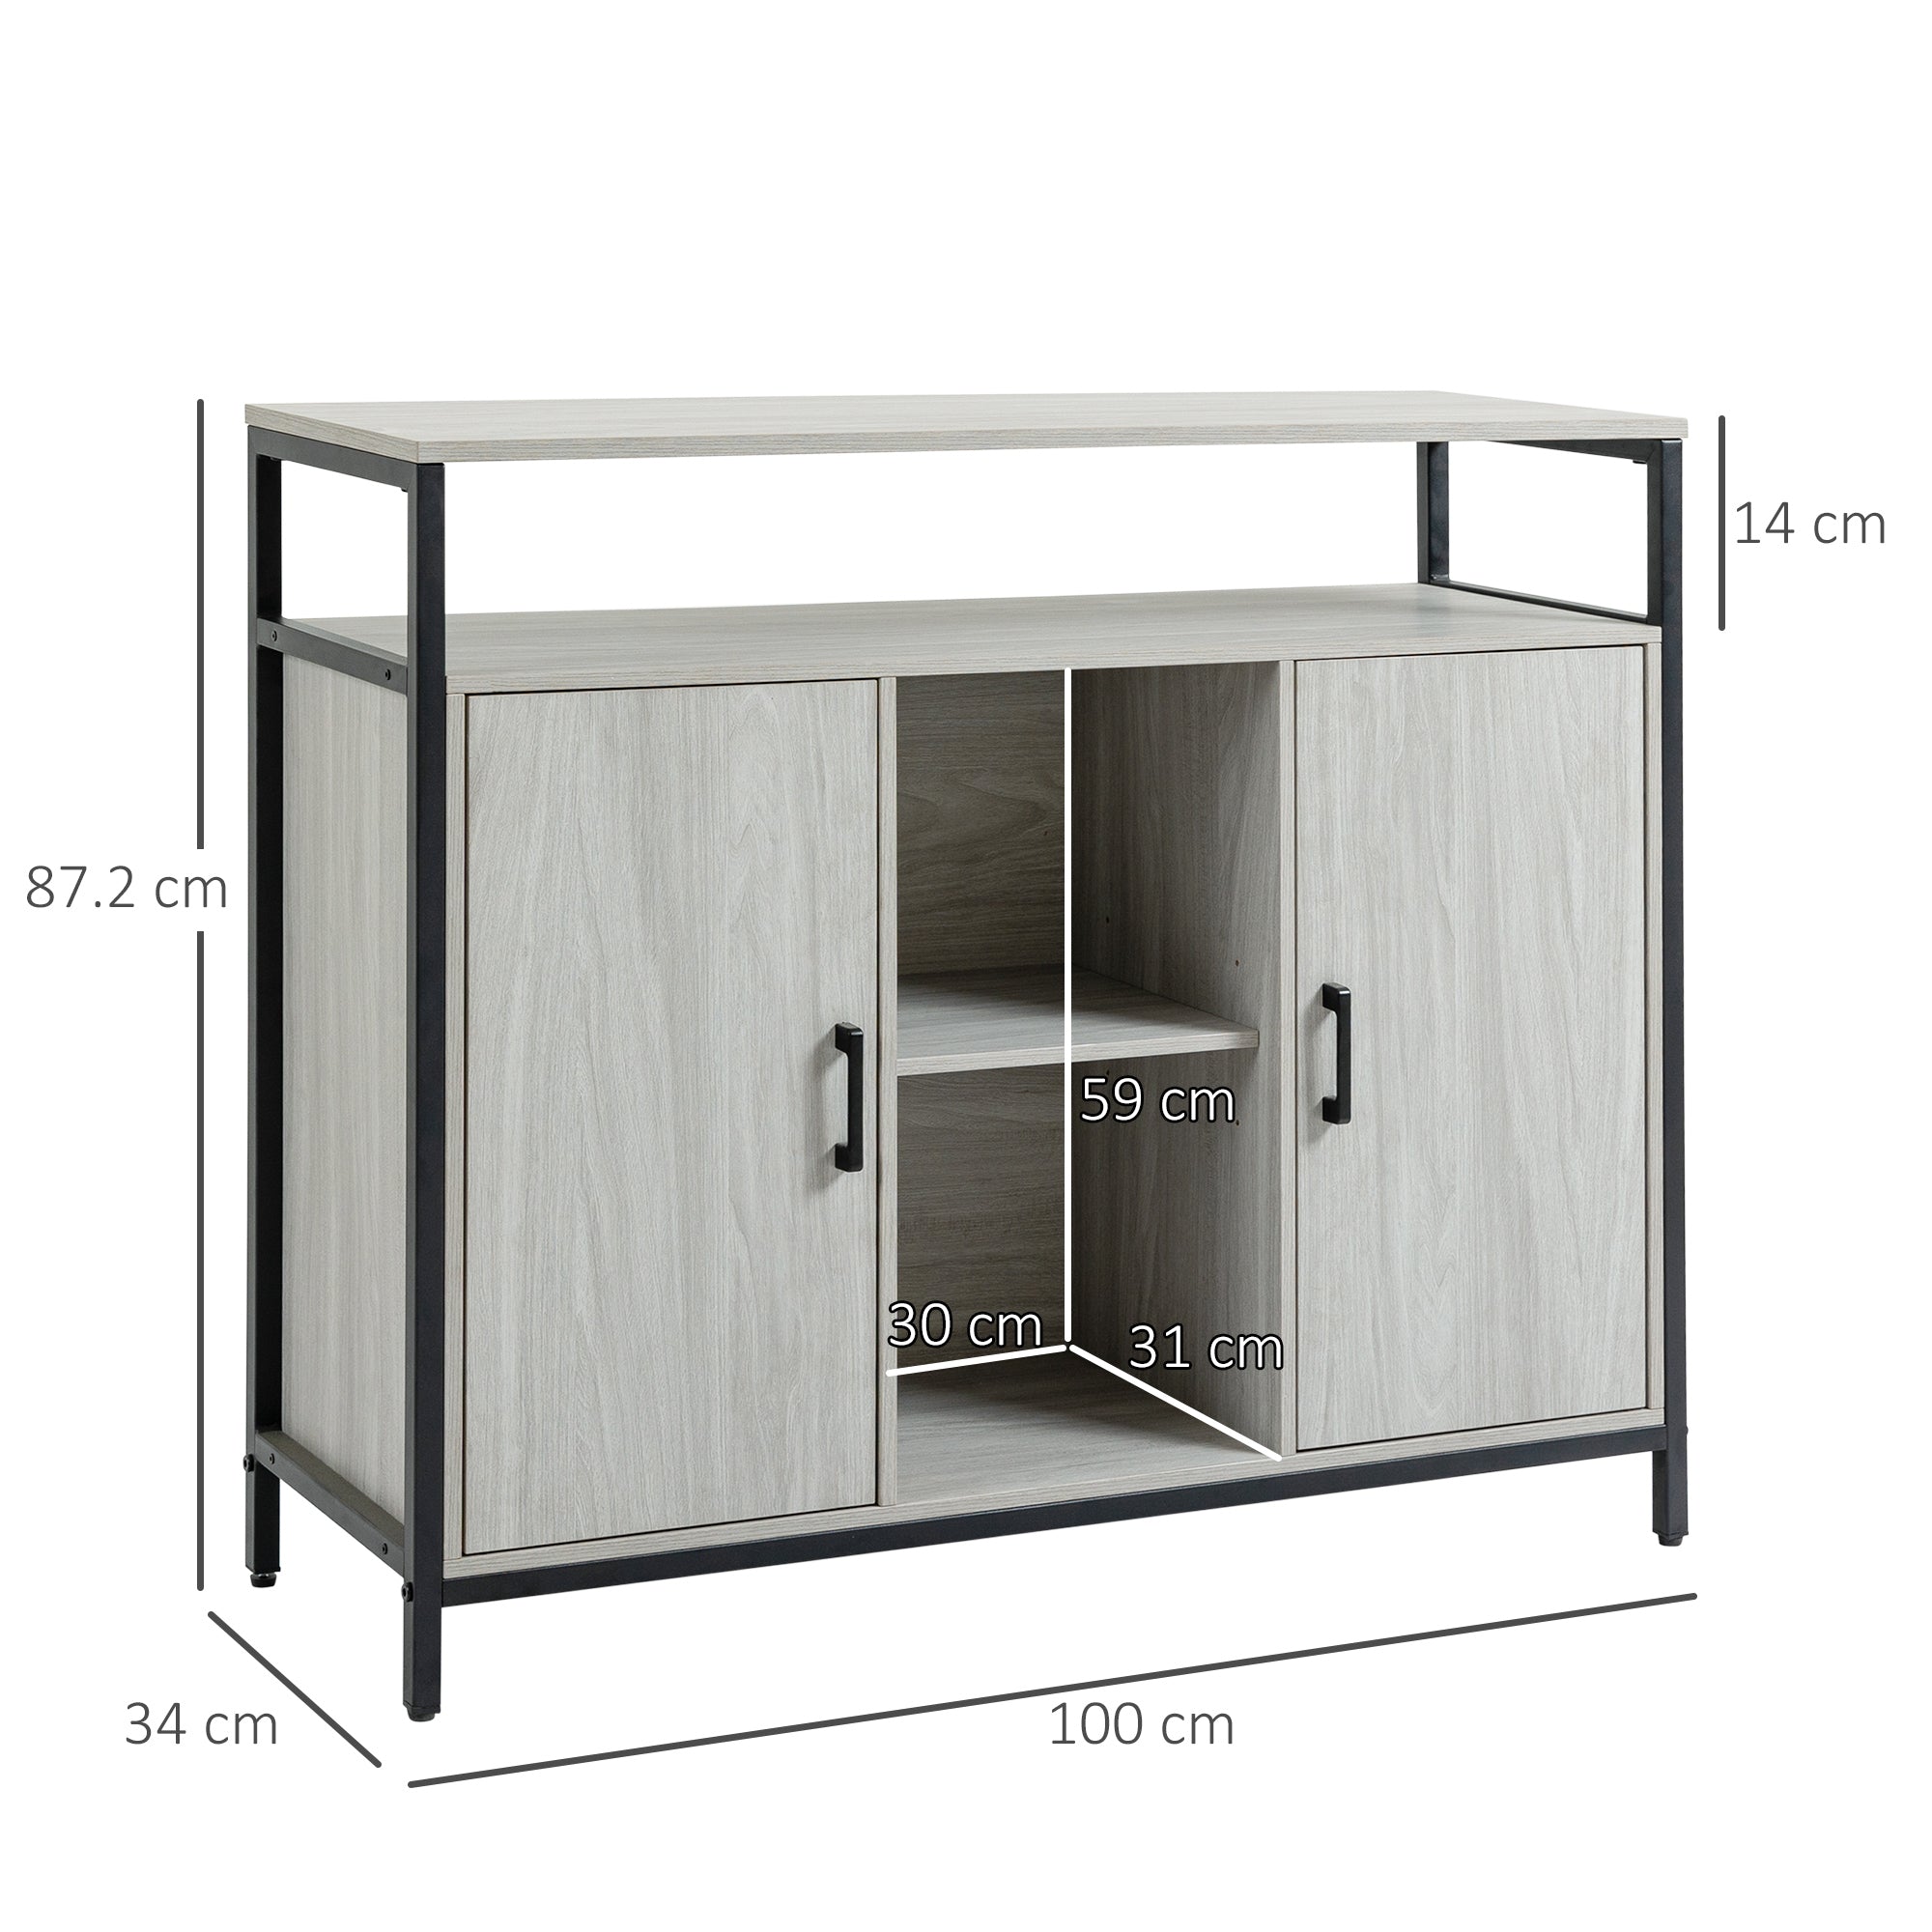 HOMCOM Modern Sideboard, Steel Frame Storage Cabinet with 2 Doors and Adjustable Shelves for Living Room, Hallway, Light Grey